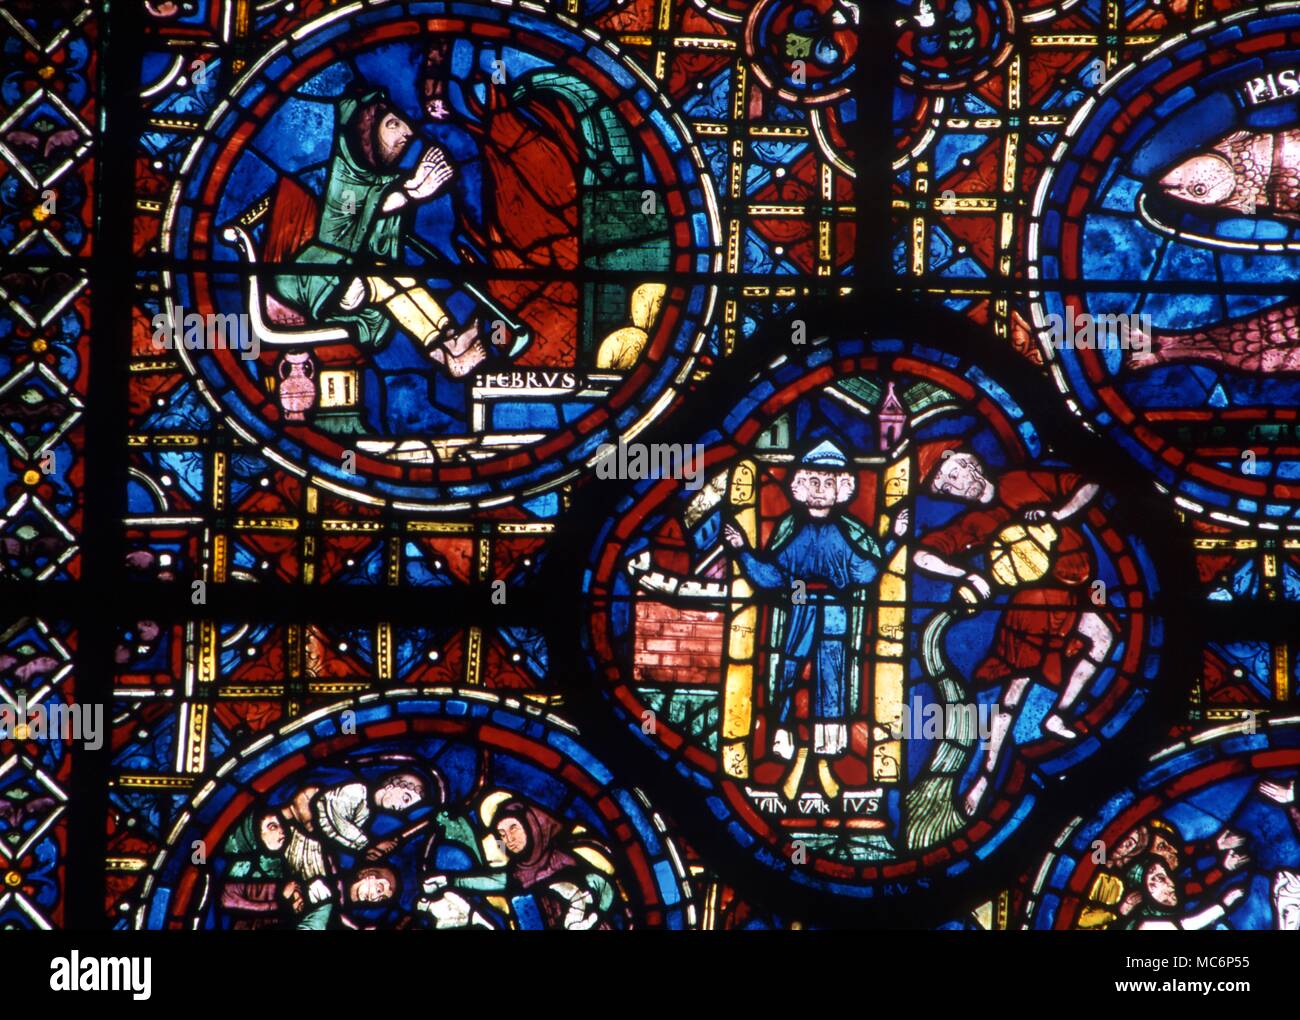 Roundels in vetro macchiato che mostra l'immagine per il mese di febbraio, scaldarsi davanti ad un fuoco. Di seguito è riportato un quatrefoil del mese di gennaio. Al dodicesimo secolo, con la cattedrale di Chartres. 2004 Charles Walker / Foto Stock